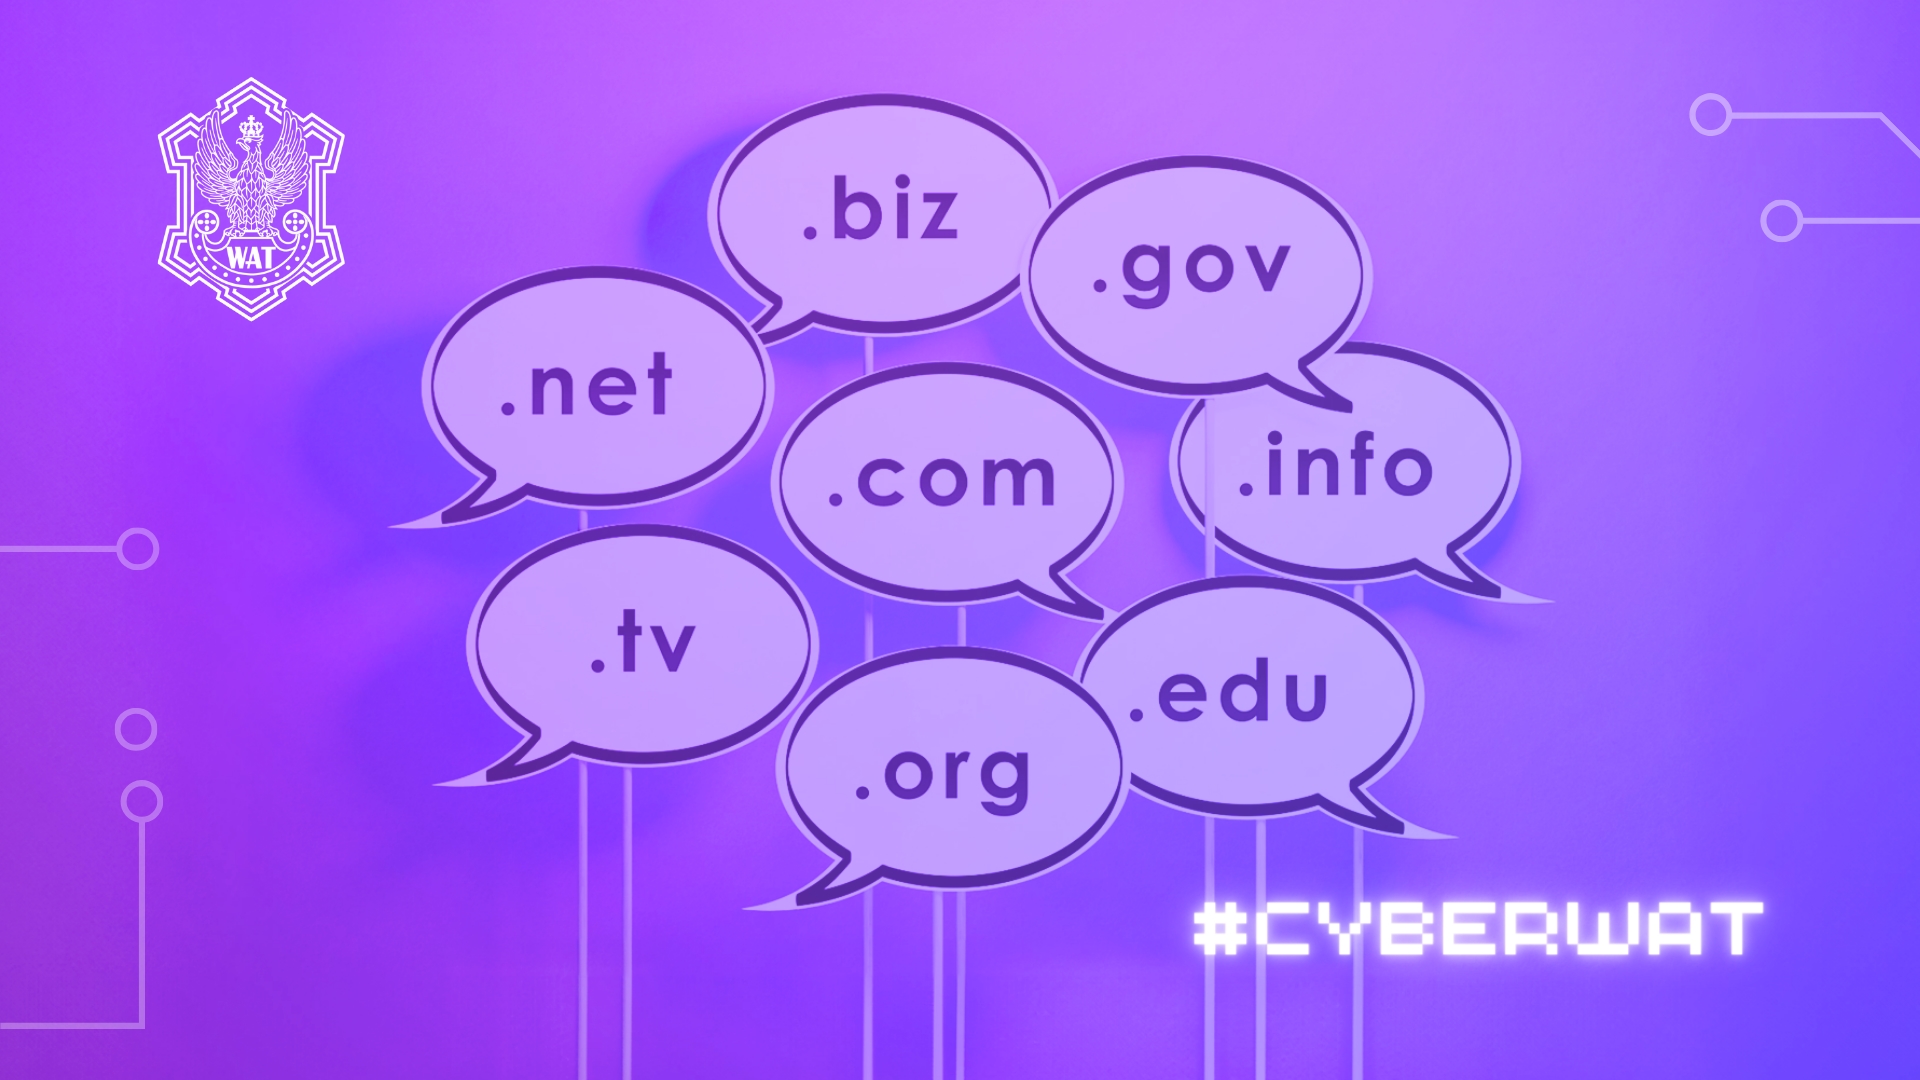 Domeny internetowe ułatwiają poruszanie się po Internecie i zapewniają spójność oraz łatwość dostępu do różnych zasobów w sieci. W ramach cyklu #cyberWAT prześledzimy ich ewolucję, poznamy różne rodzaje ich rozszerzeń oraz przeanalizujemy pod kątem potencjalnych zagrożeń.